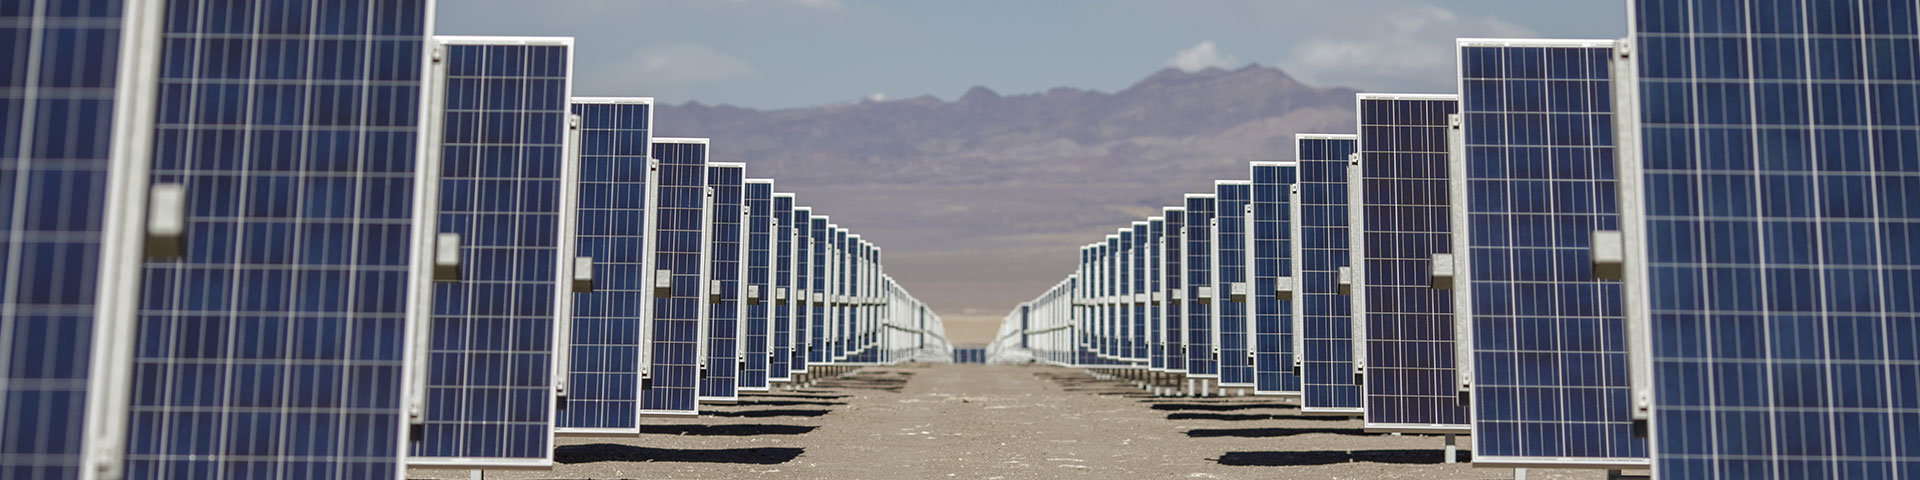 De nombreux modules photovoltaïques sont placés les uns derrière les autres dans un parc solaire. Copyright : GIZ